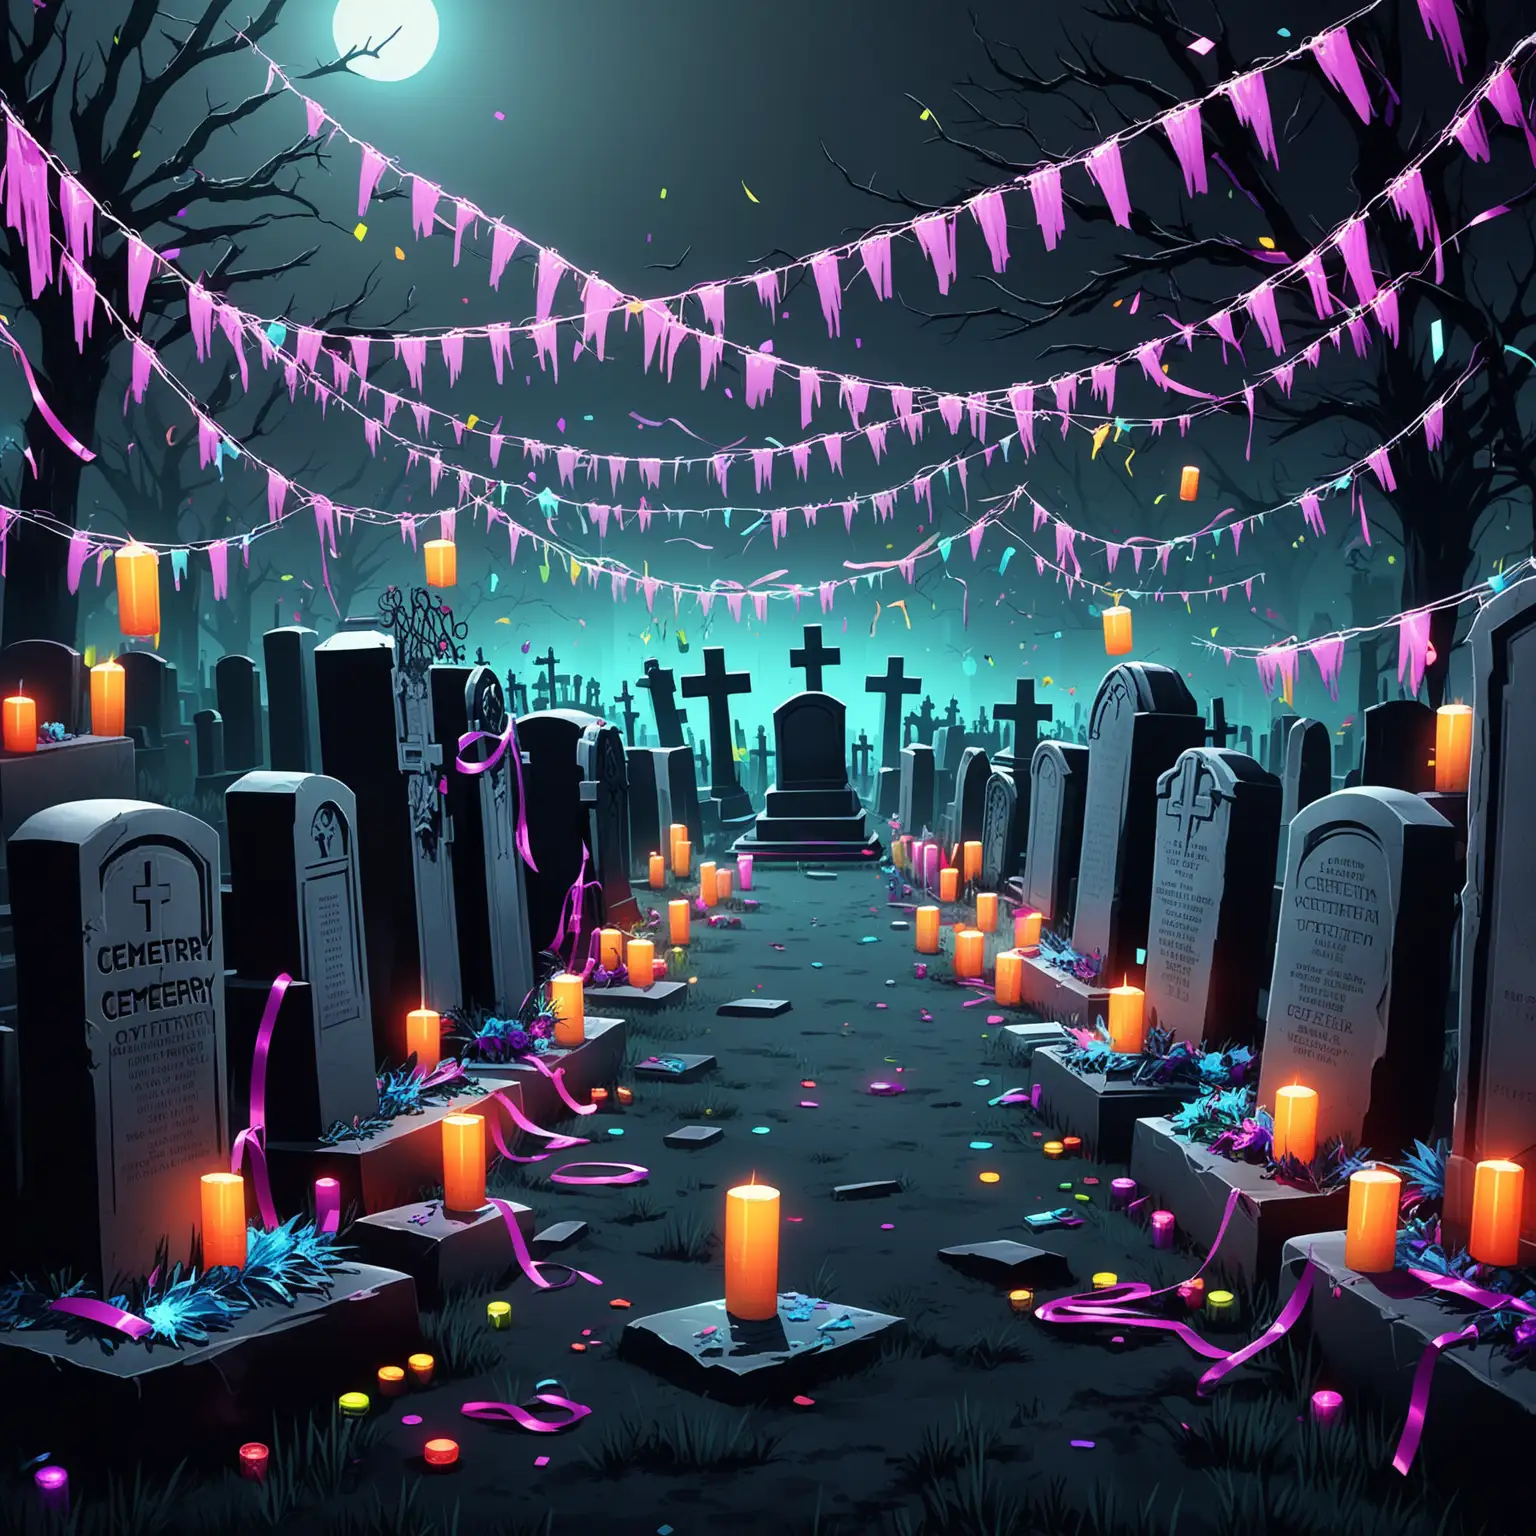 墓园，派对，赛博朋克，无人物，稍微突出派对氛围，墓碑细节多一些，可以加入一些彩带、灯饰等派对元素